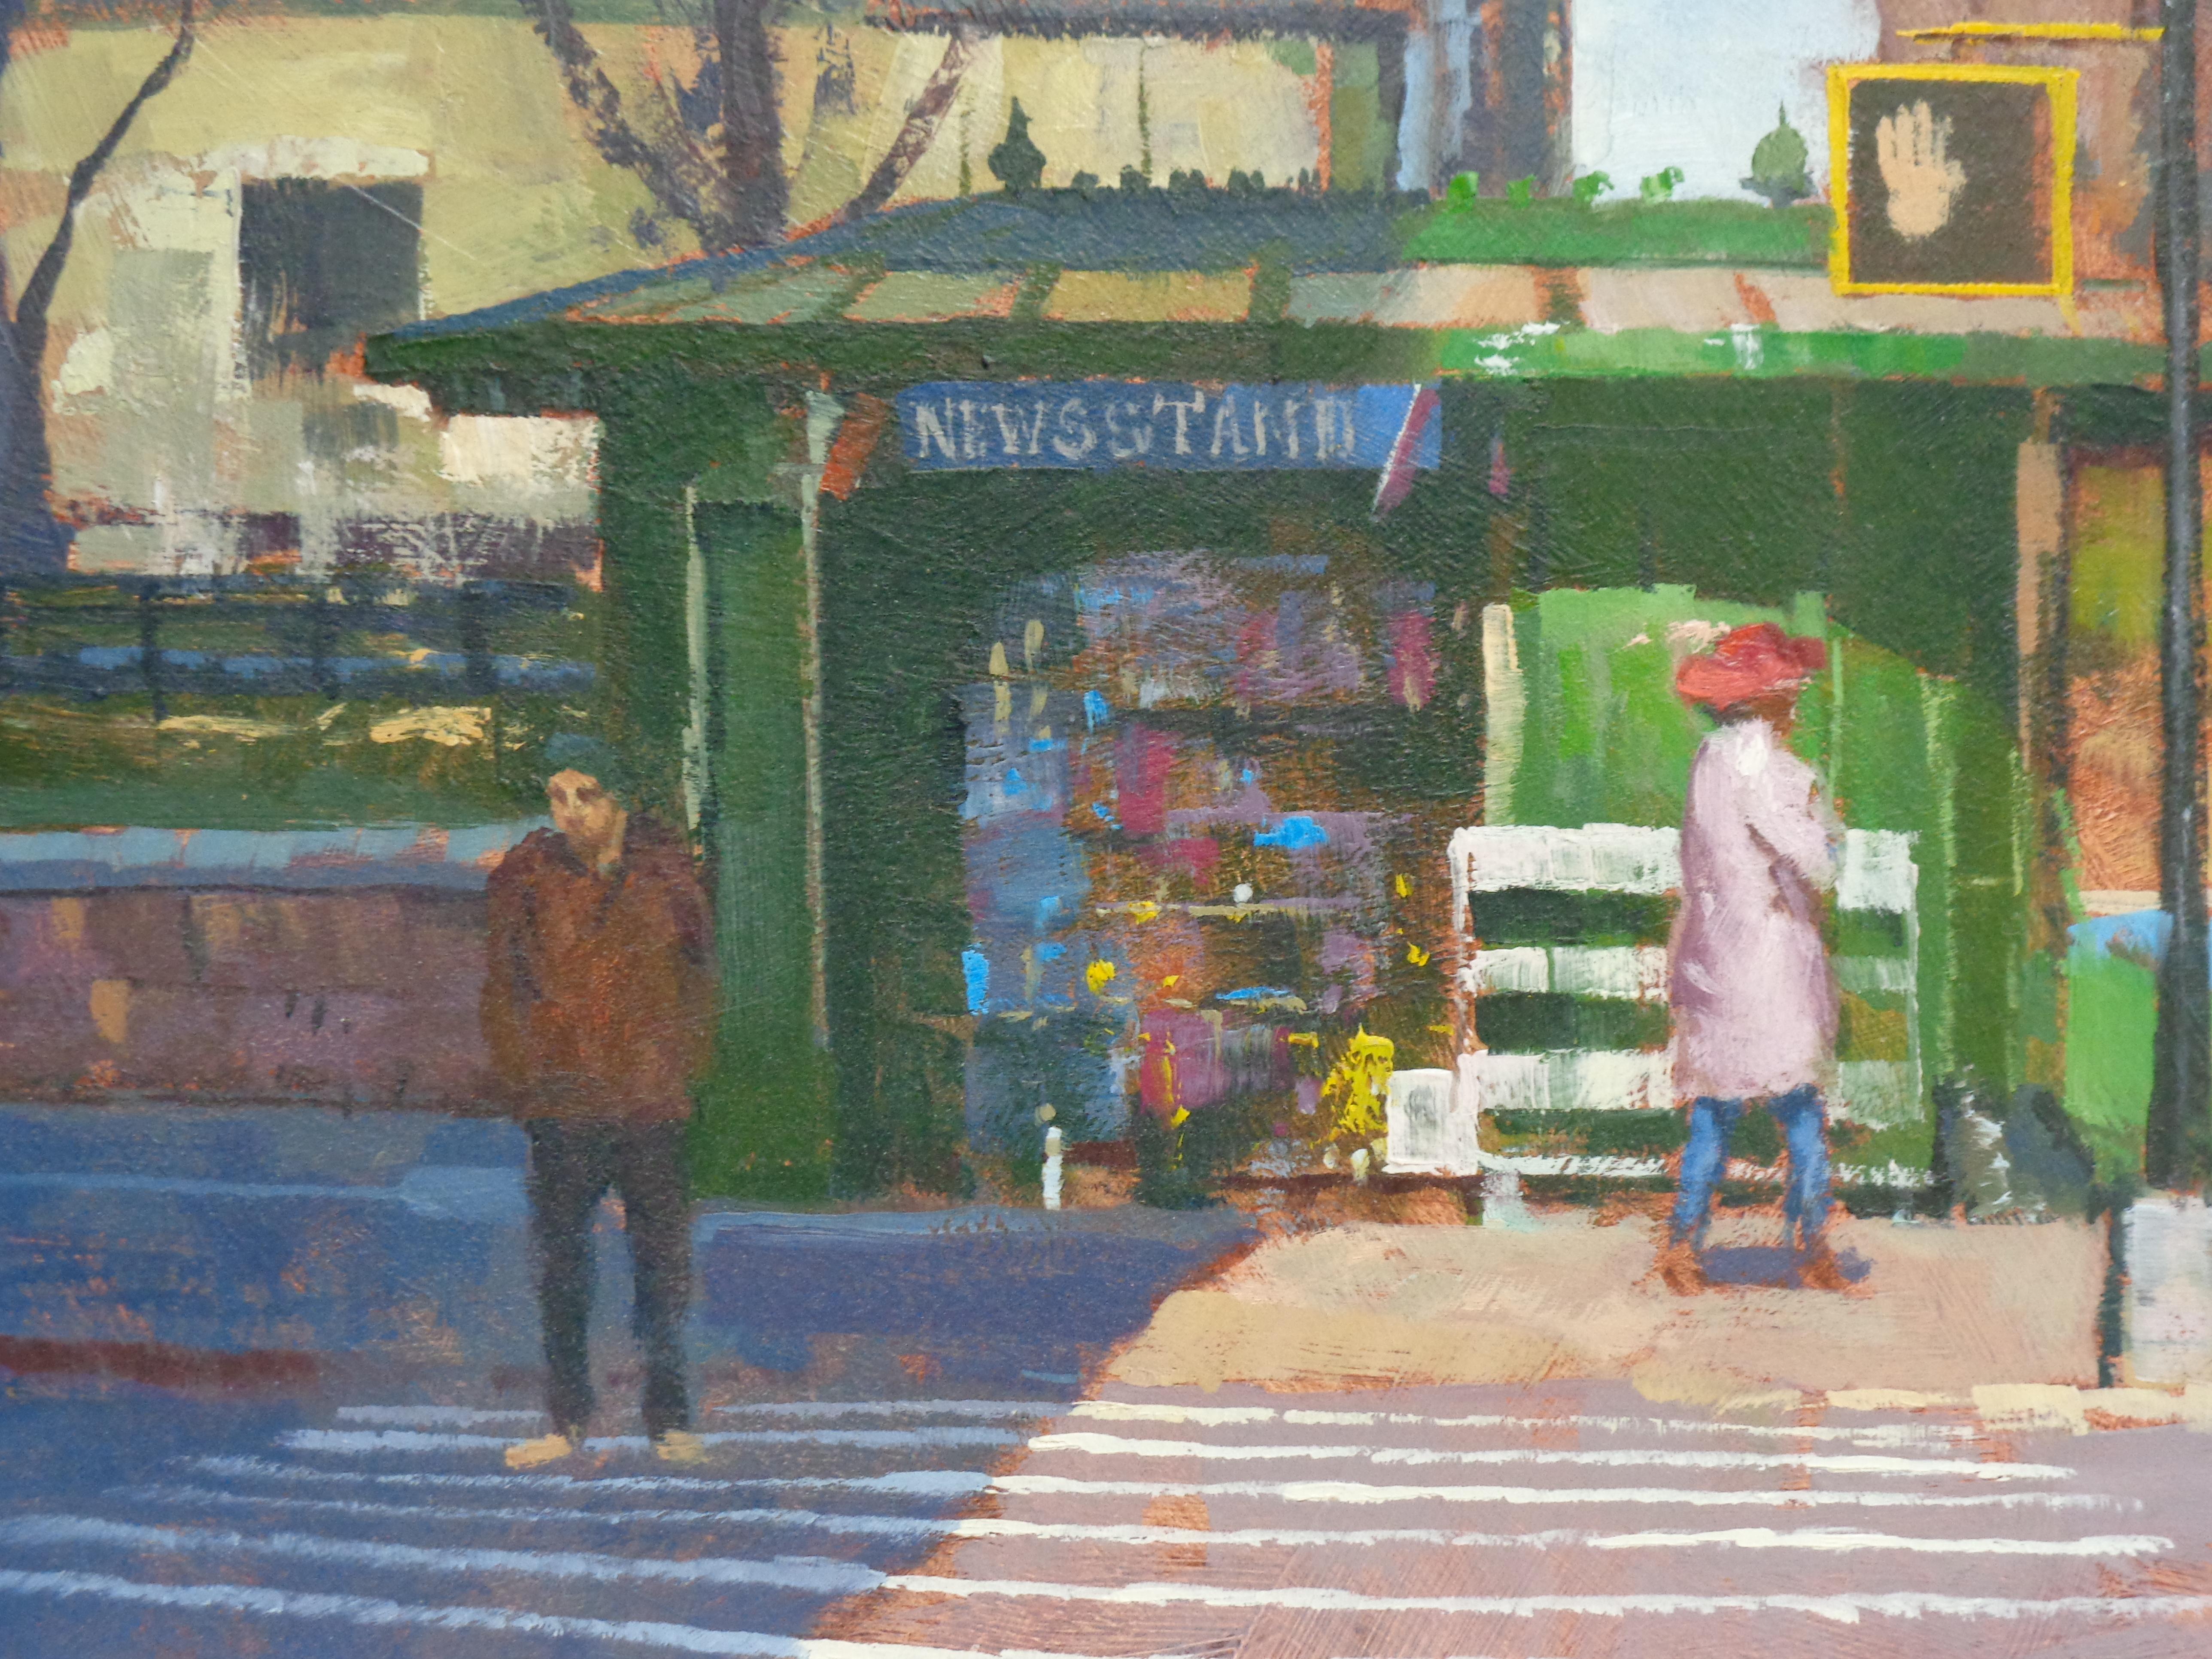  Peinture de rue de la ville de New York - Paul Bachem News Stand - Painting de Michael Budden